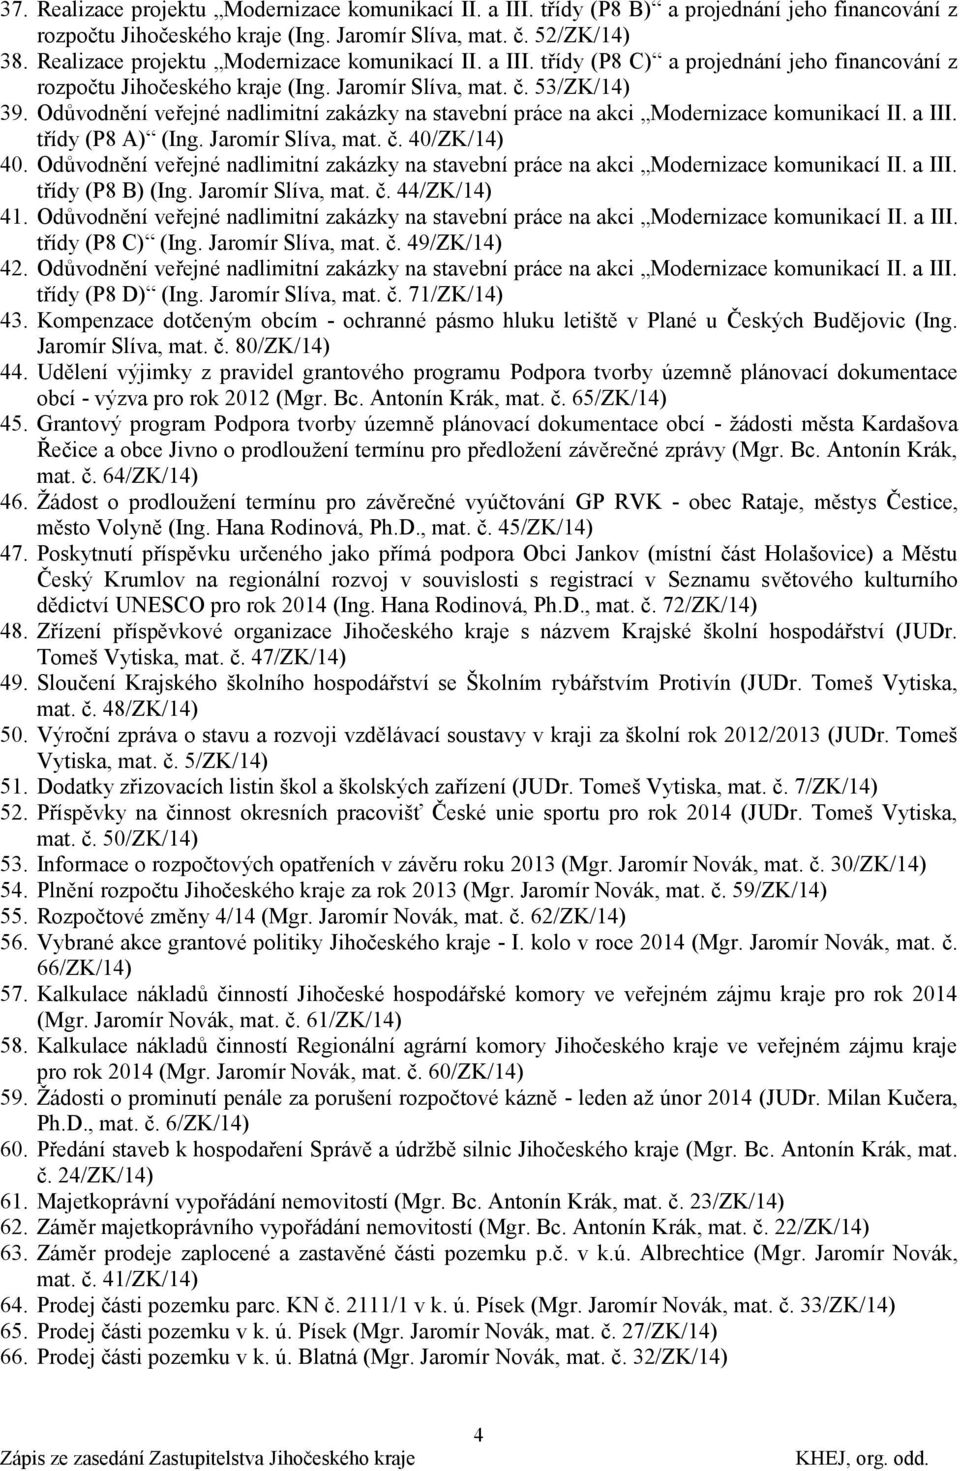 Odůvodnění veřejné nadlimitní zakázky na stavební práce na akci Modernizace komunikací II. a III. třídy (P8 A) (Ing. Jaromír Slíva, mat. č. 40/ZK/14) 40.